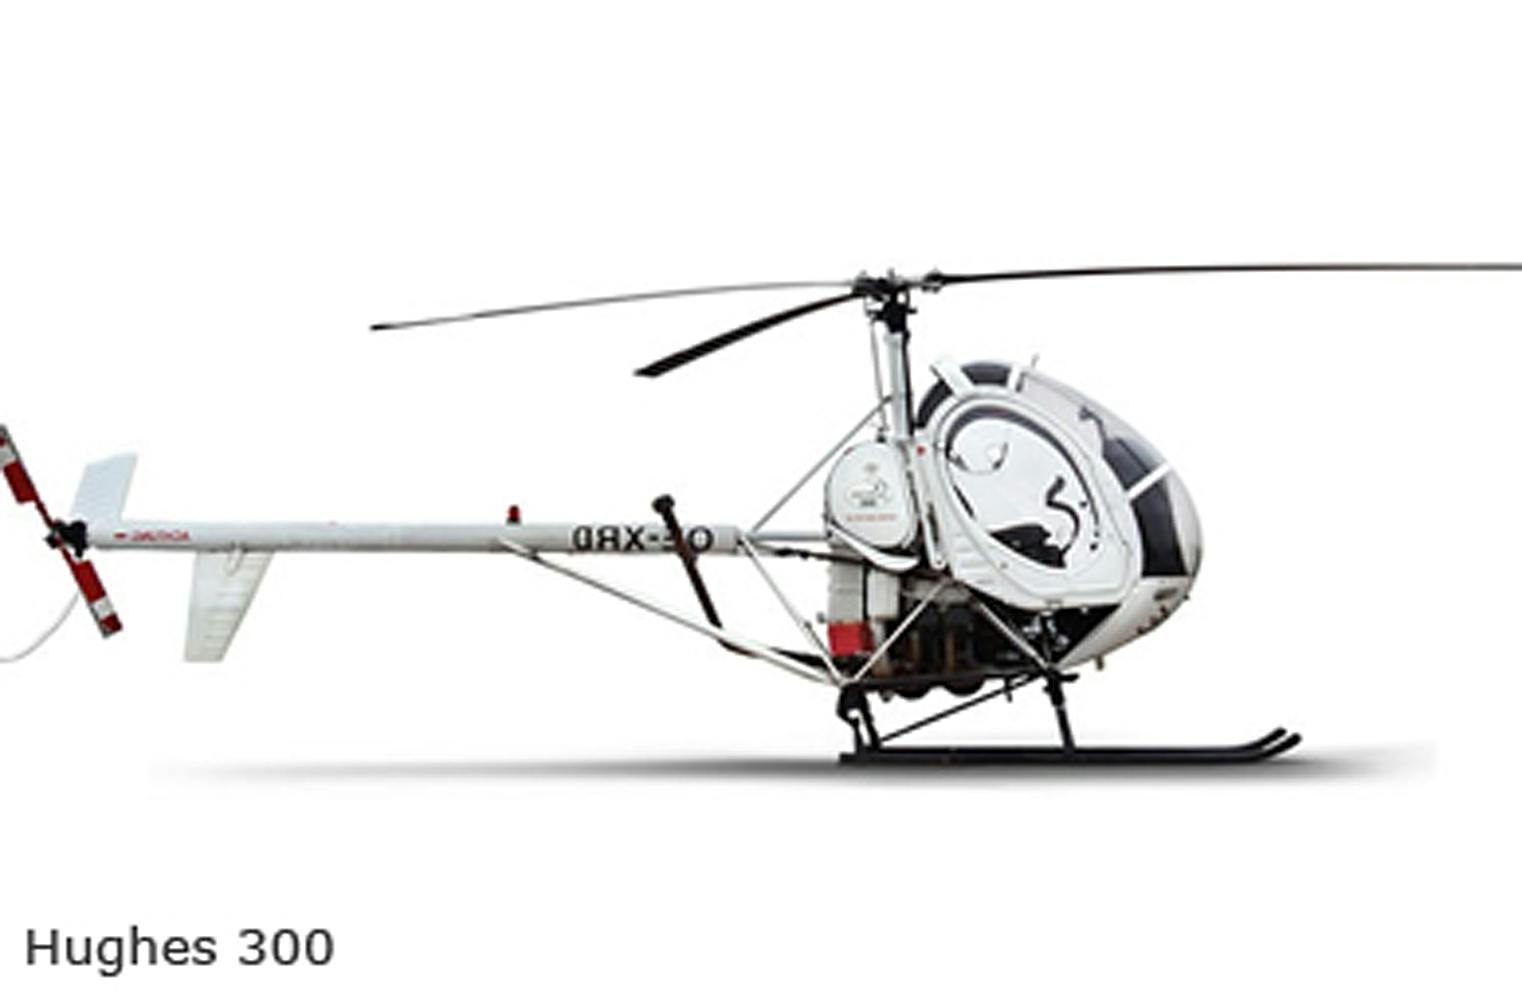 Helicopterrundflug | Hughes 300 oder Jet Ranger | 20 Min.